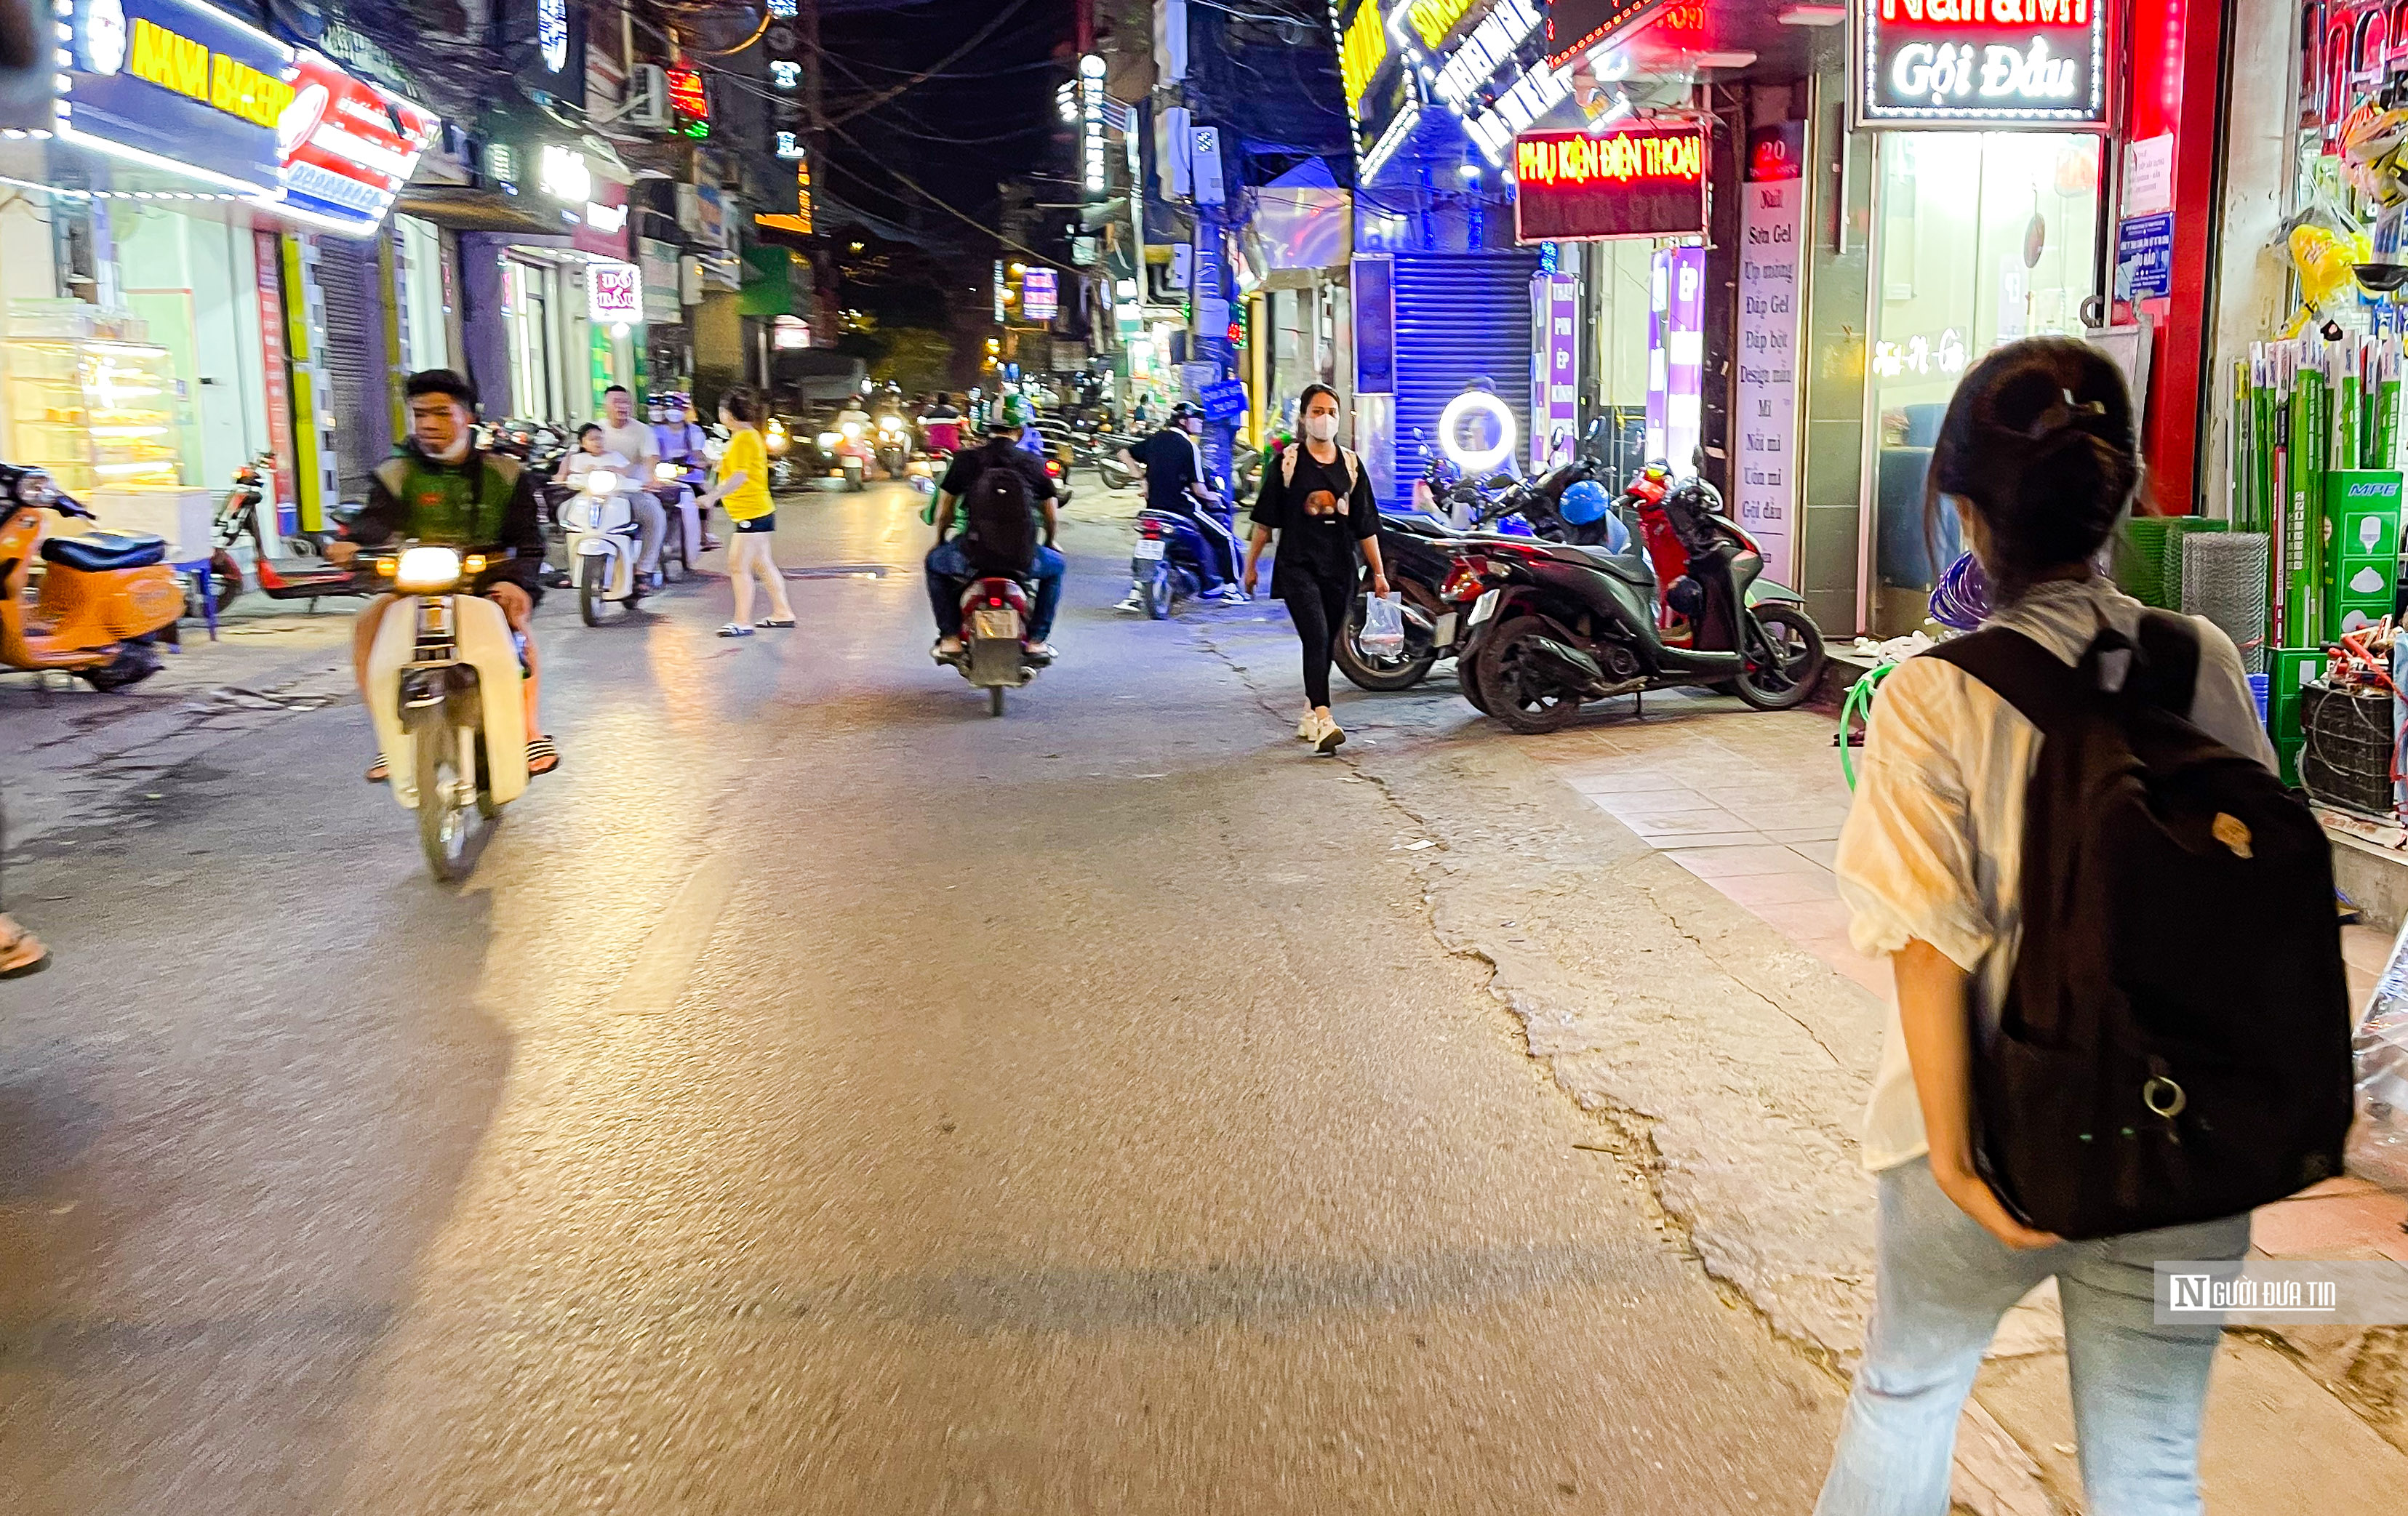 Hà Nội: Vỉa hè tiếp tục bị tái lấn chiếm